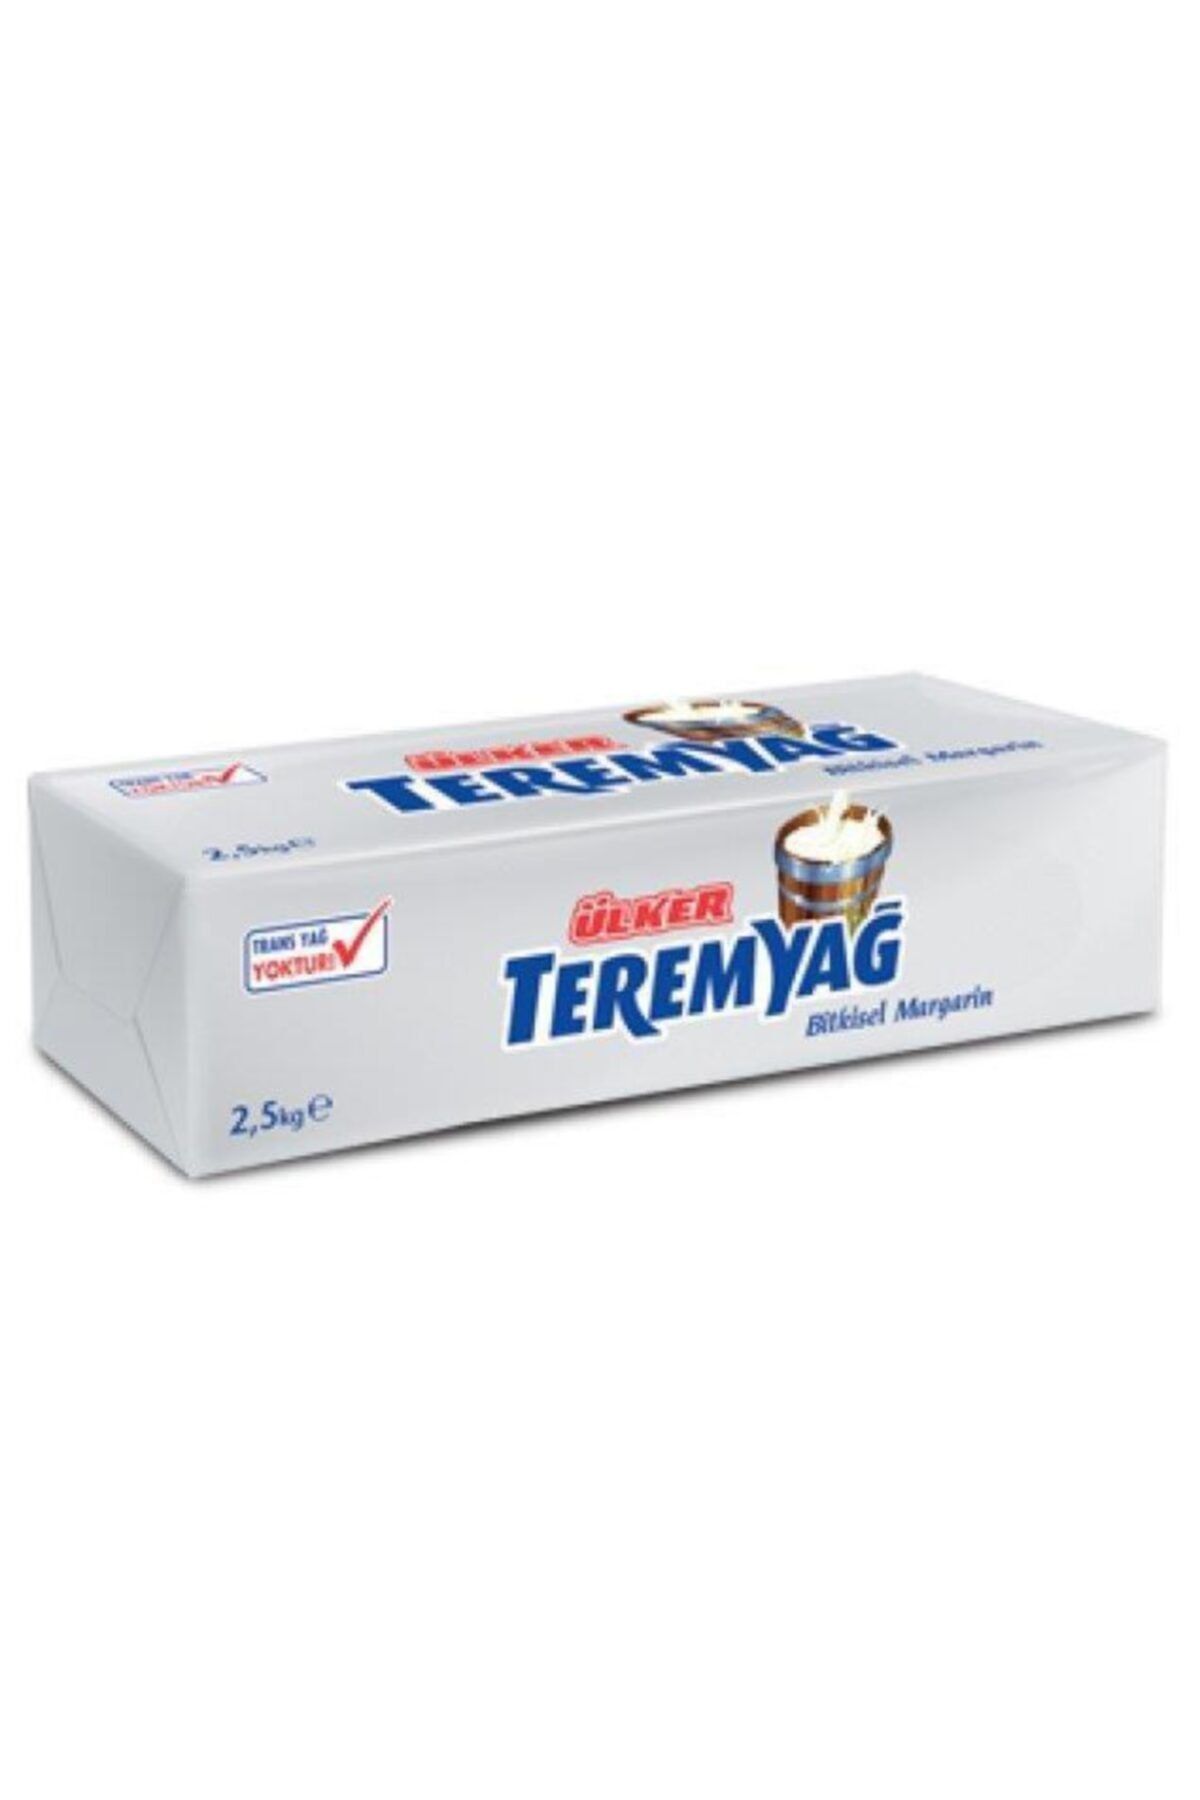 Ülker Teremyağ Blok Margarin 2,5 kg